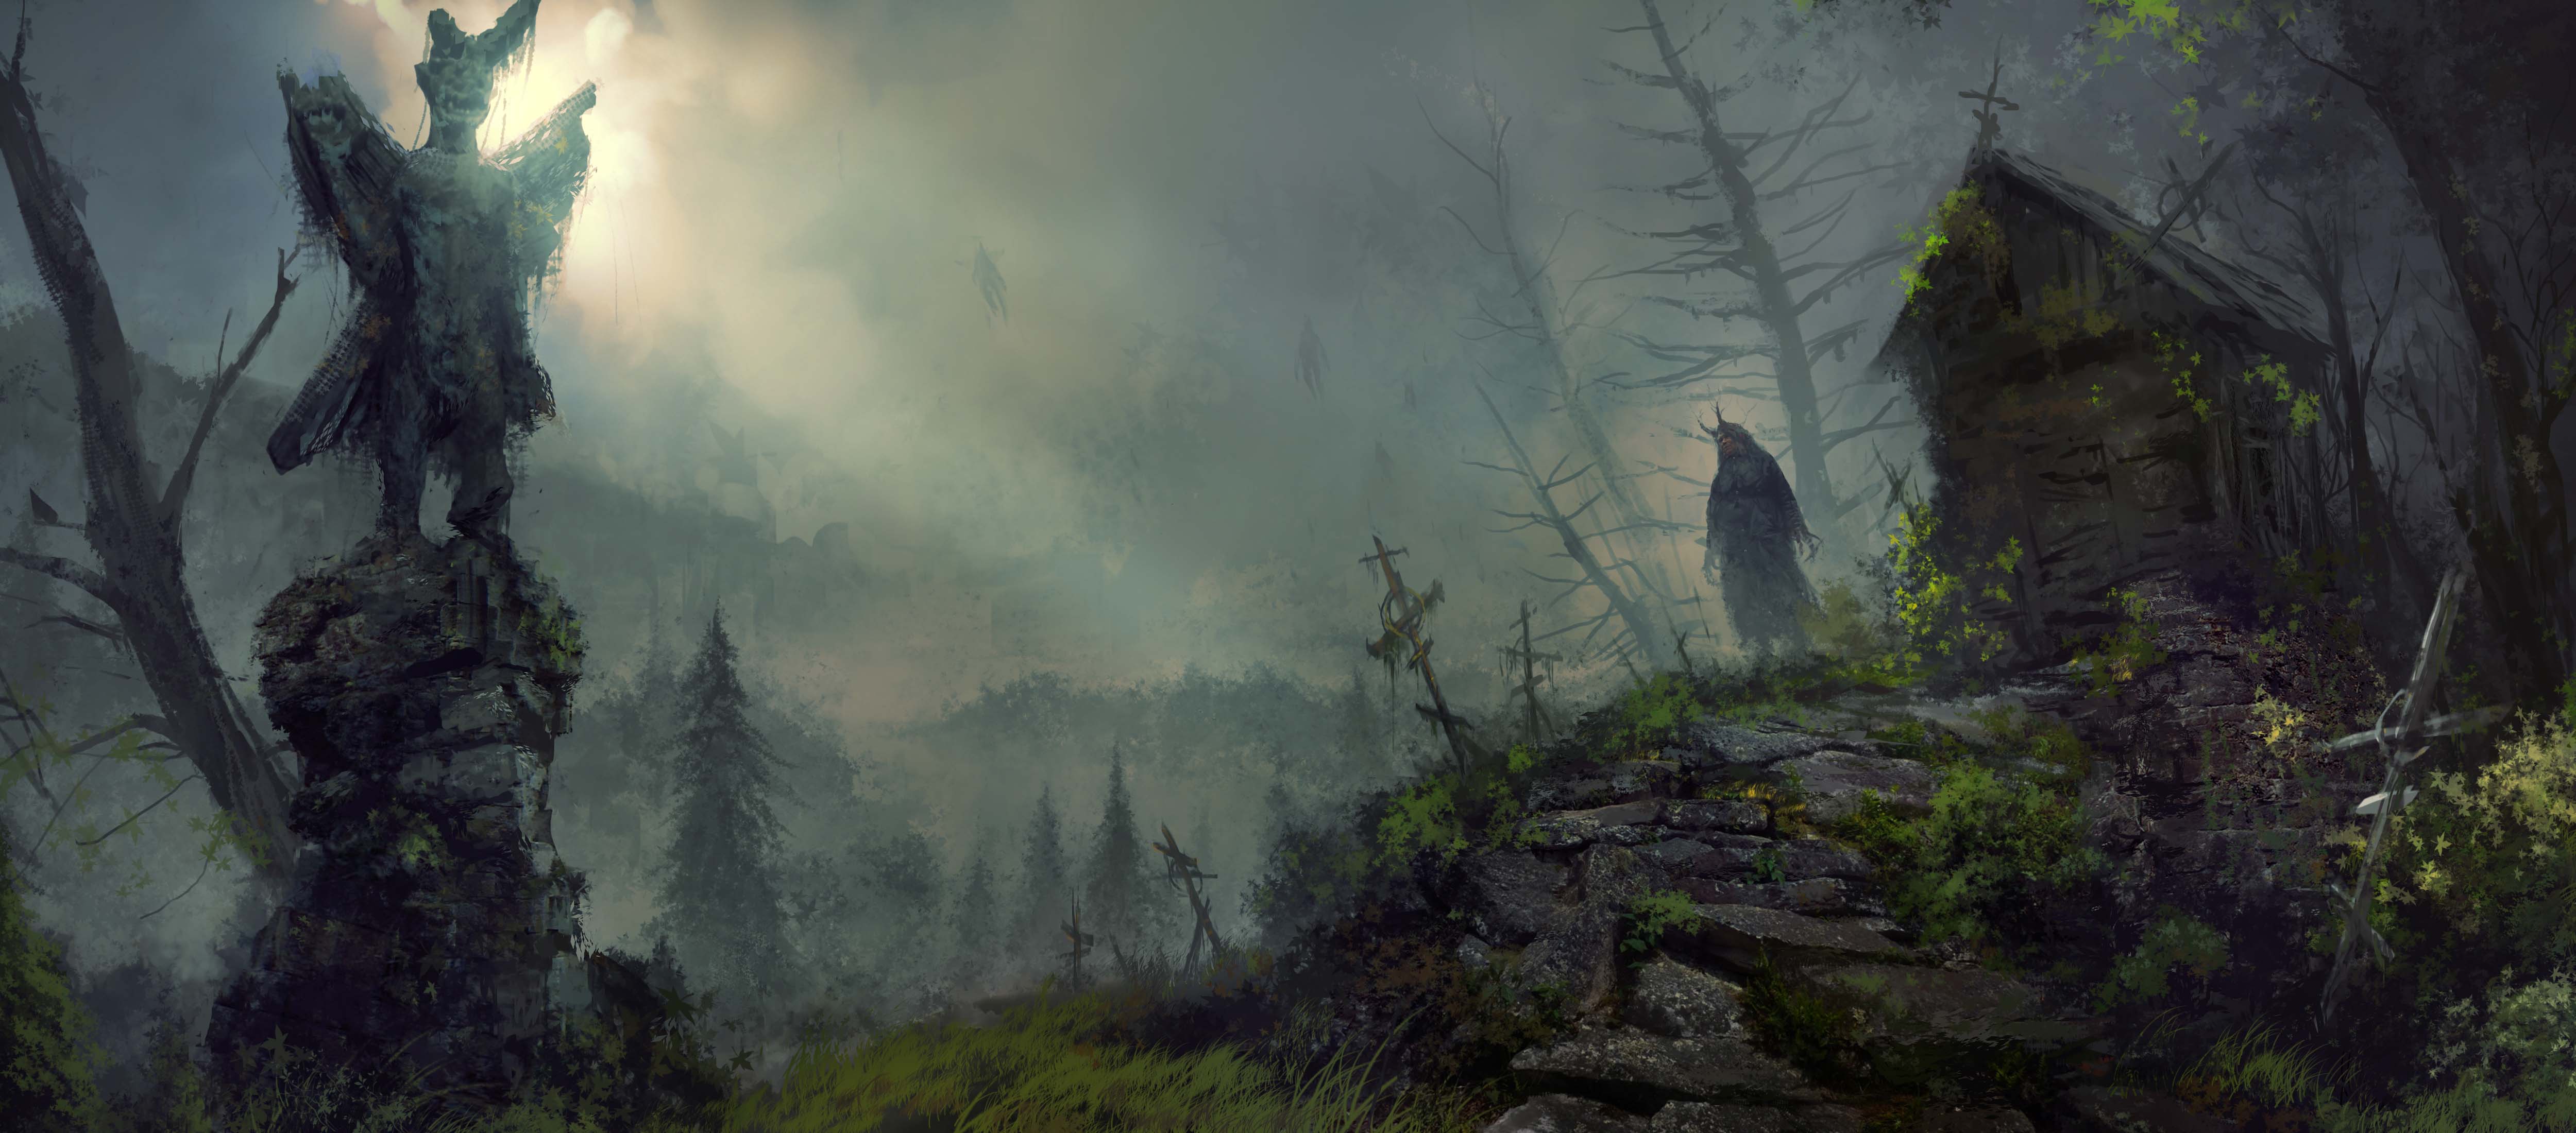 暴雪嘉年华2019：《暗黑4》更多细节曝光 开放世界、天赋树系统